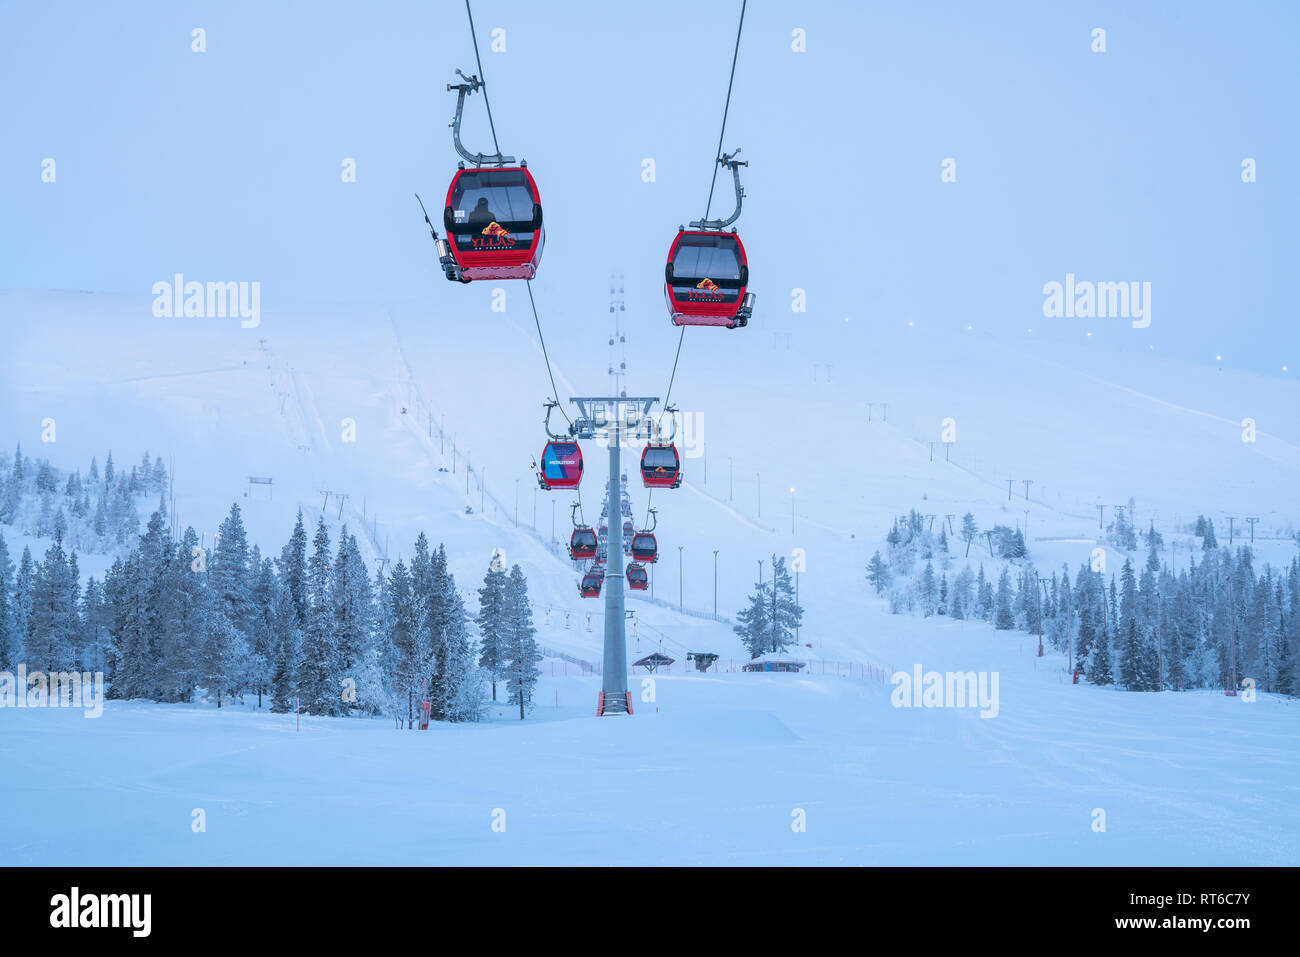 Ylläs ski resort and gondola lift with people in them in Kolari and Äkäslompolo, Finland Stock Photo